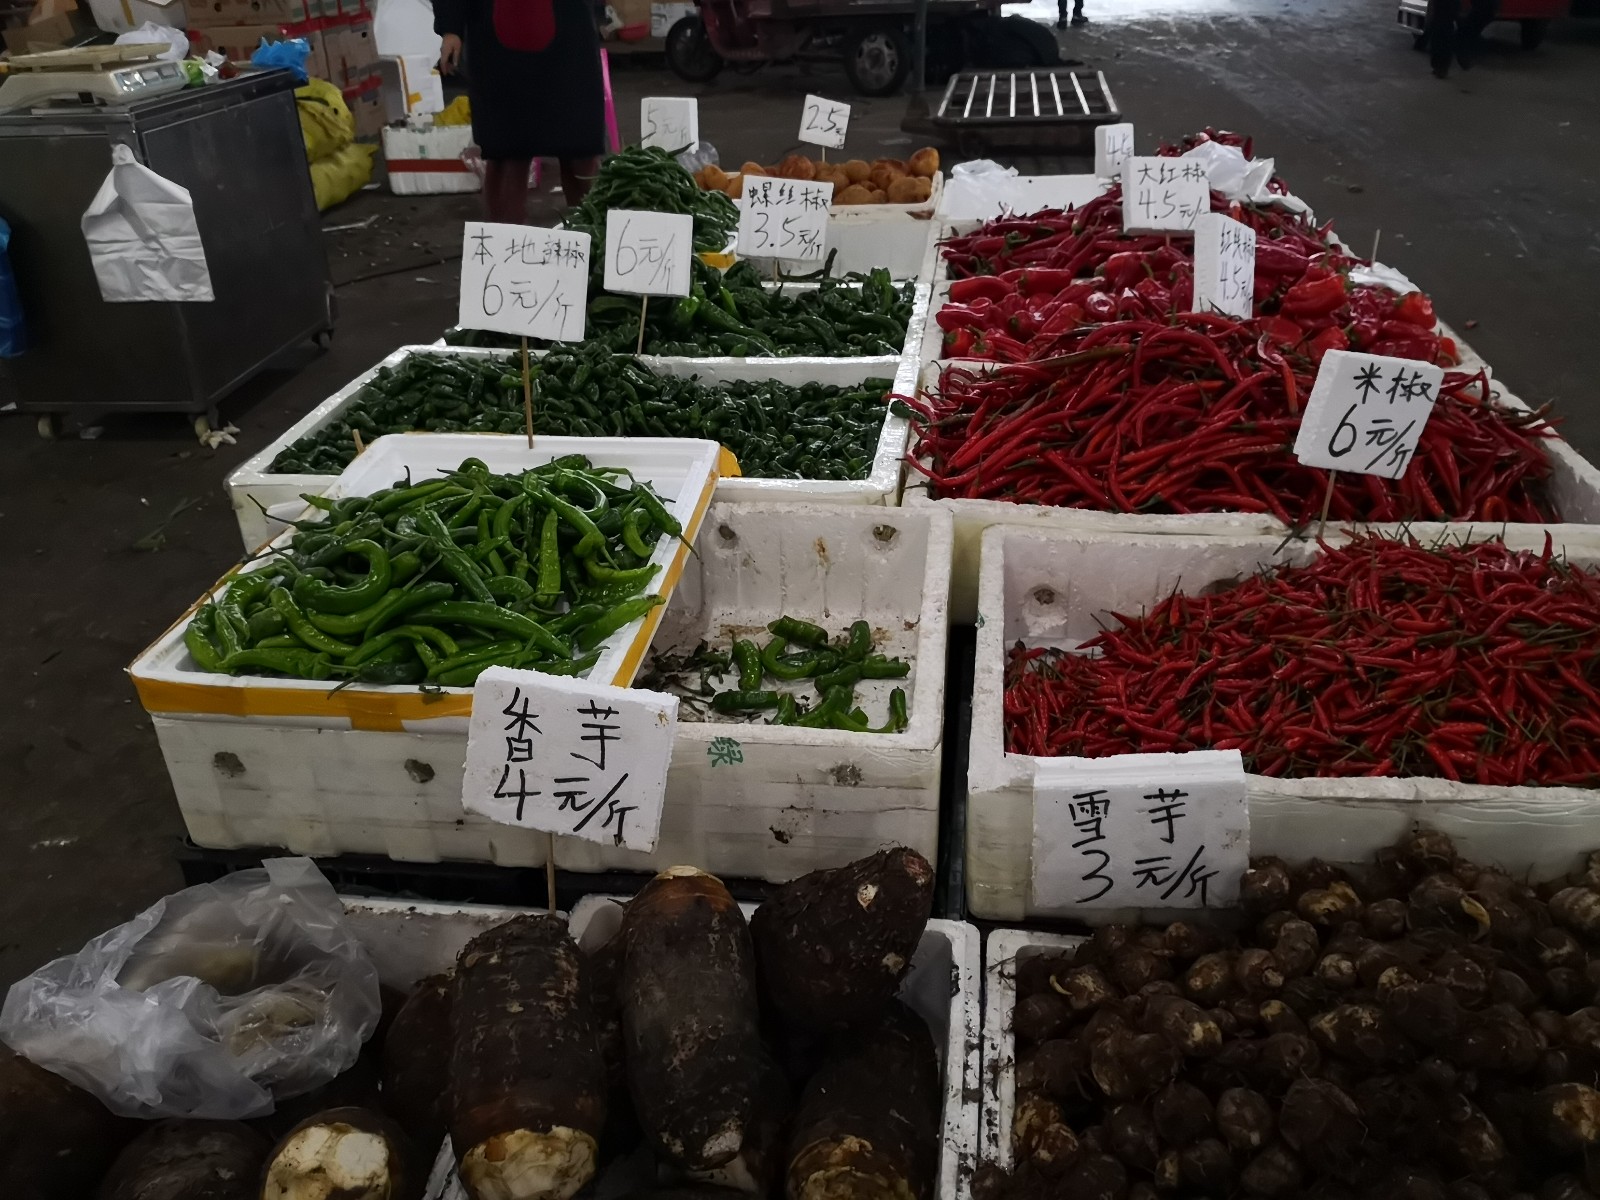 红星大市场内蔬菜供应充足品种丰富。